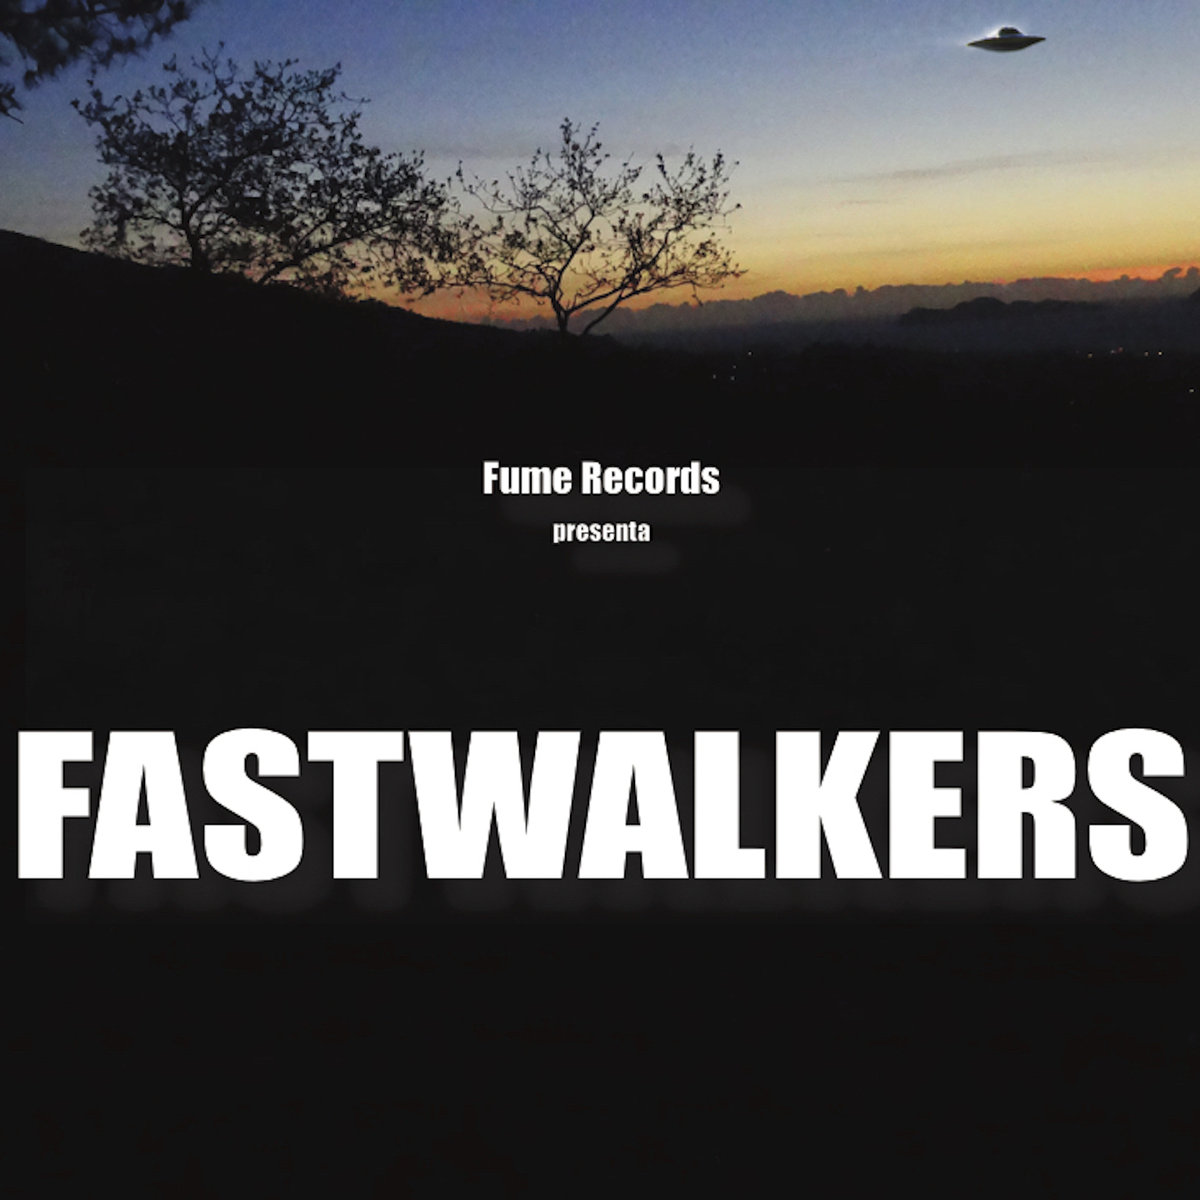 Fastwalkers